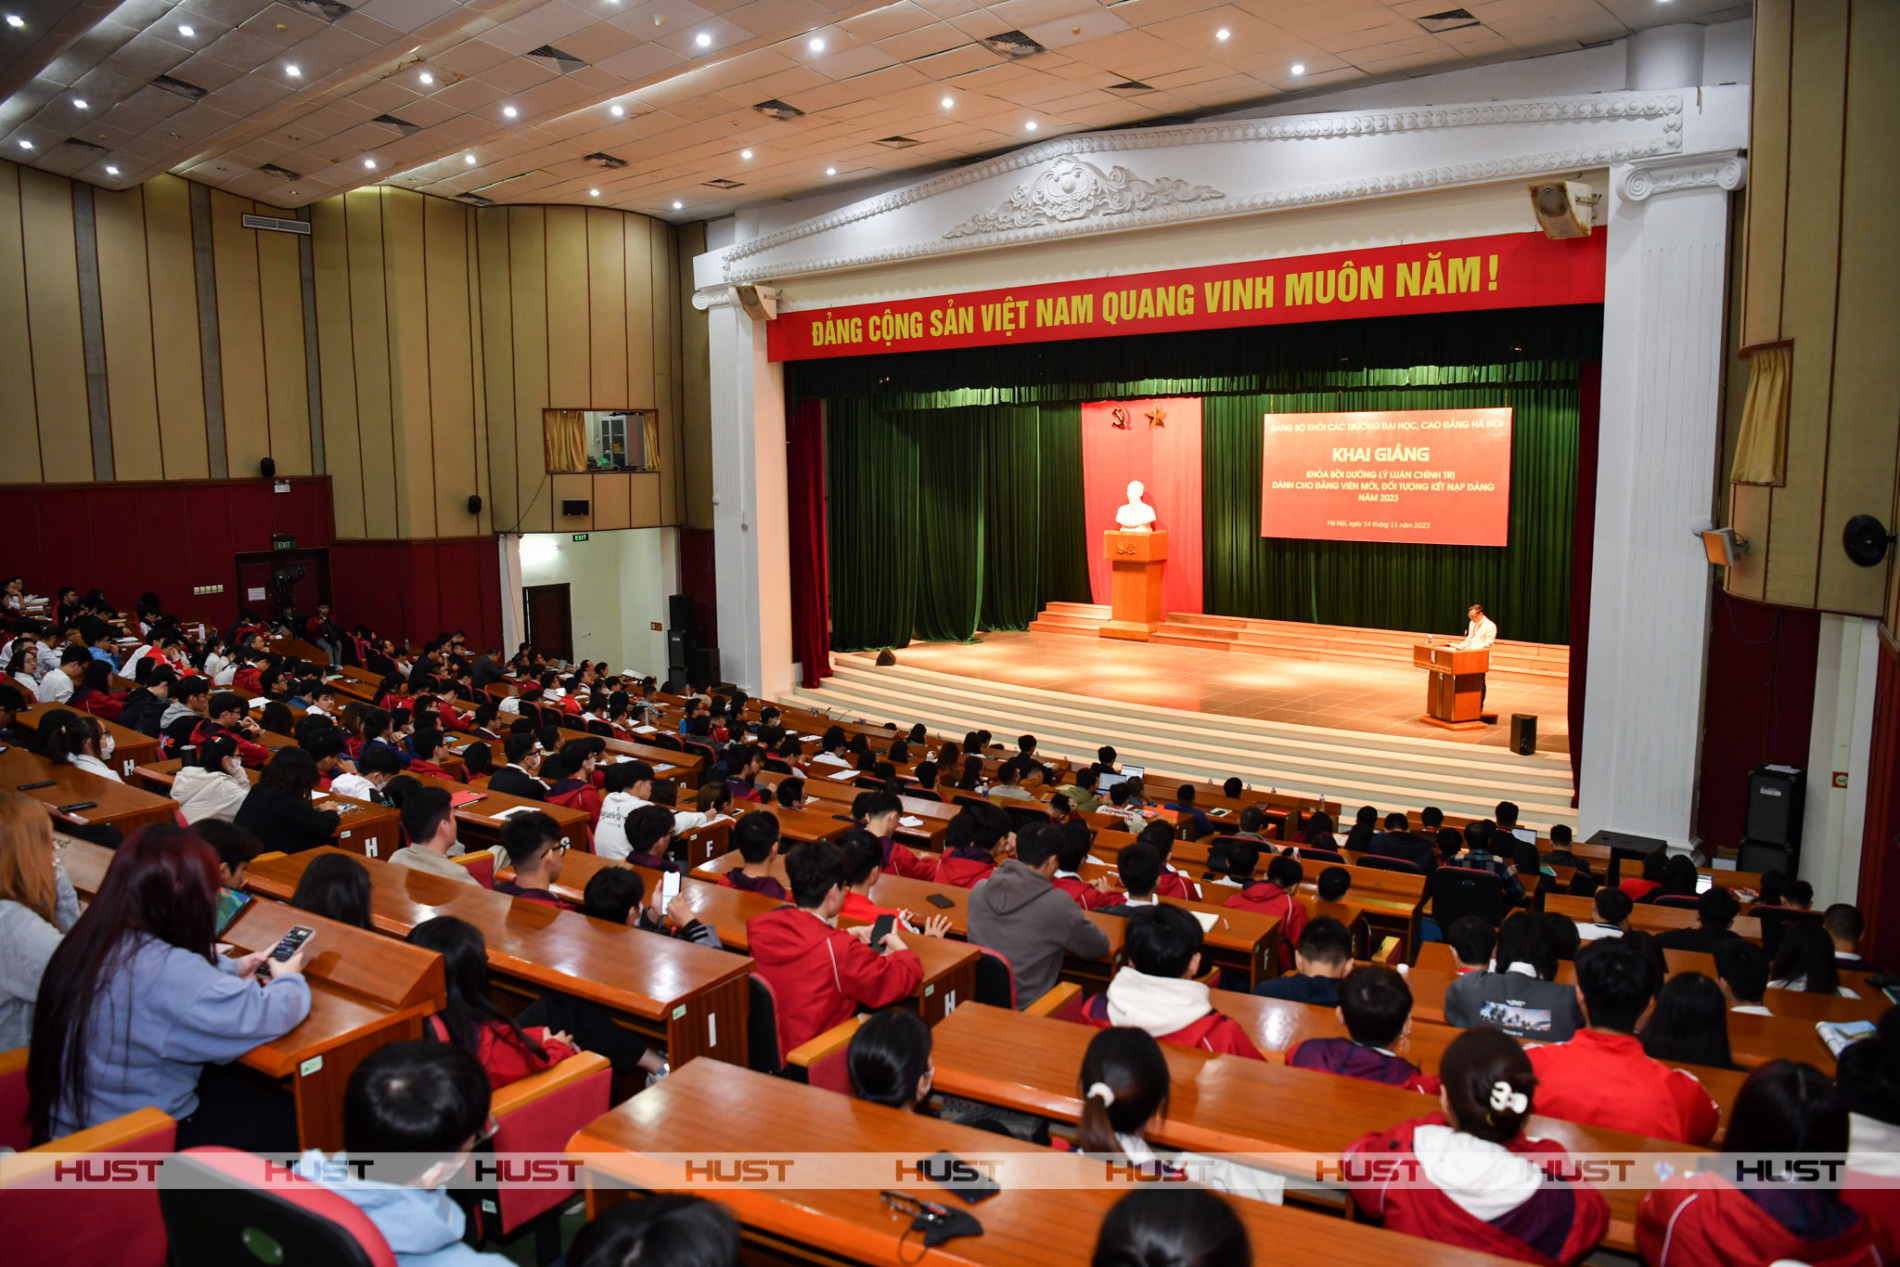 Toàn cảnh lễ khai giảng các lớp học bồi dưỡng lý luận chính trị cho đảng viên mới và đối tượng kết nạp Đảng năm 2023 của ĐHBK Hà Nội